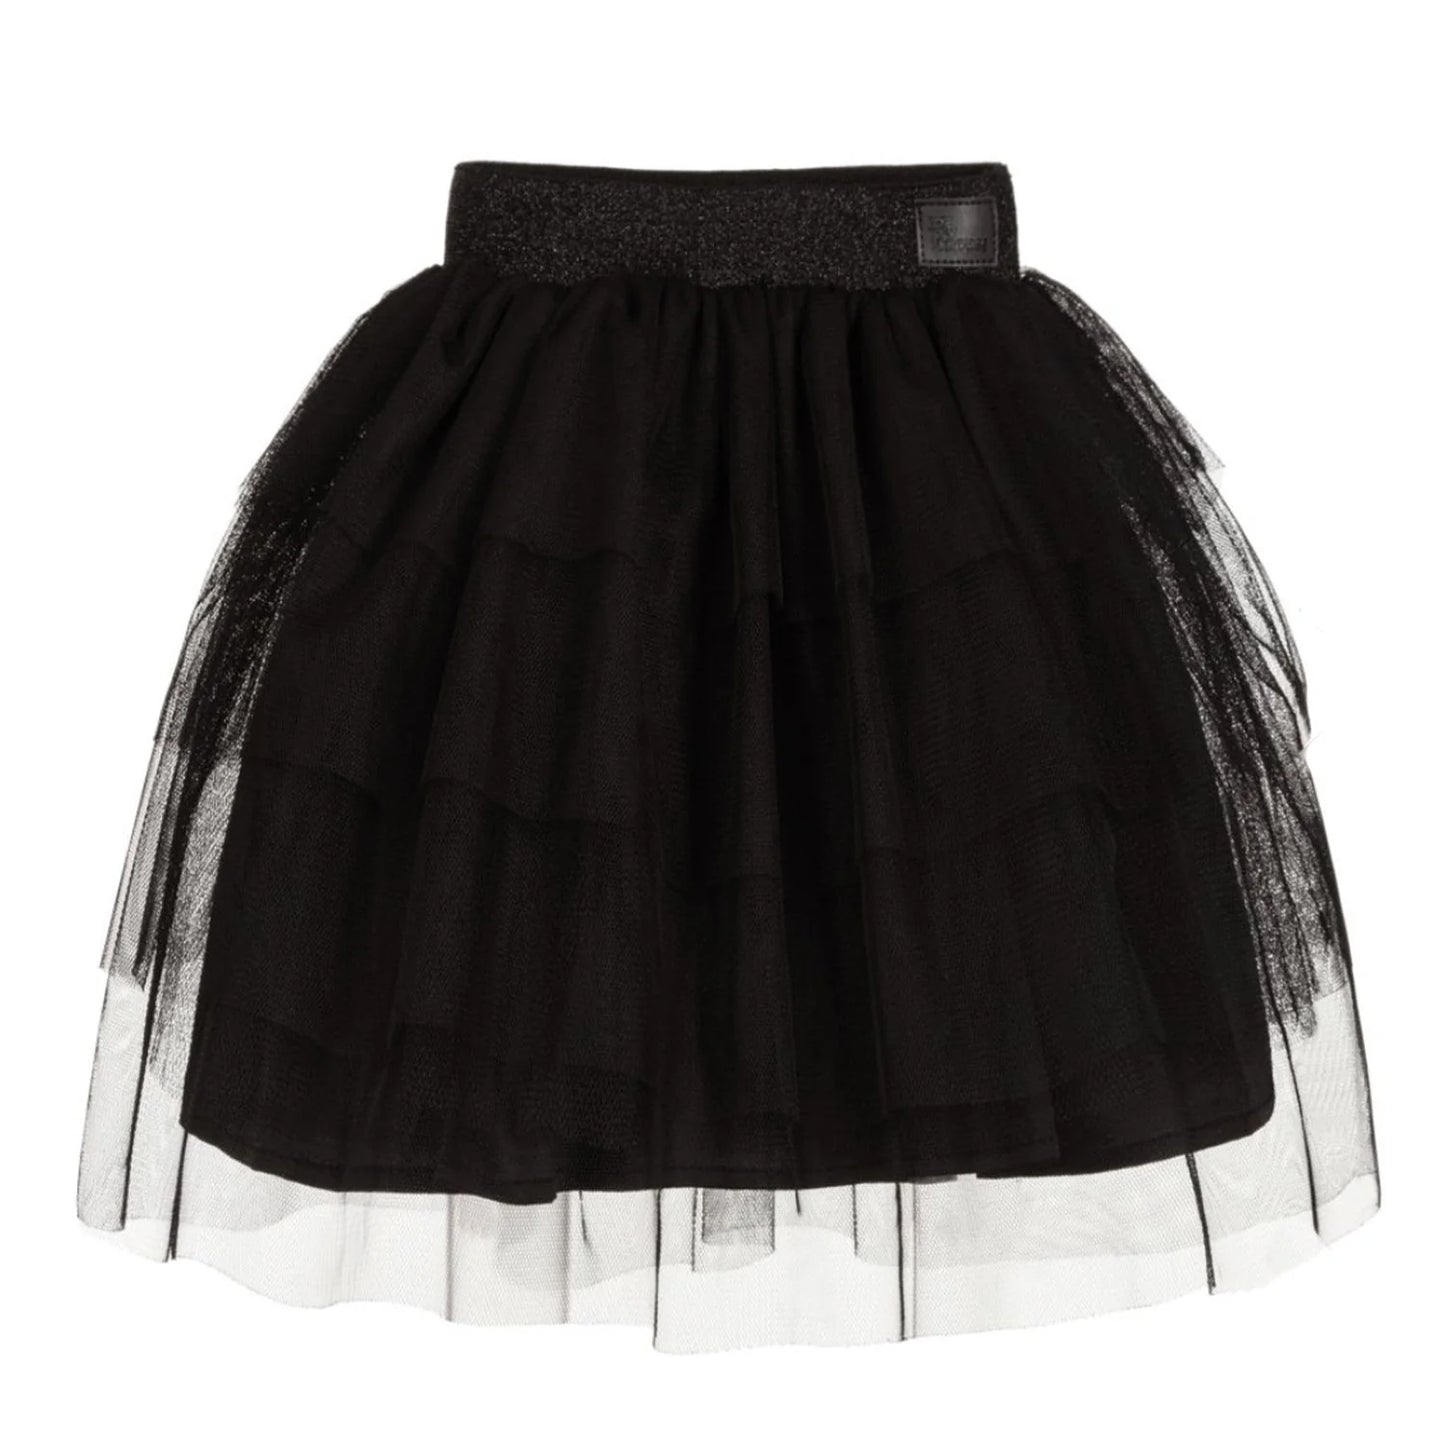 Crazy Tulle Skirt - Black